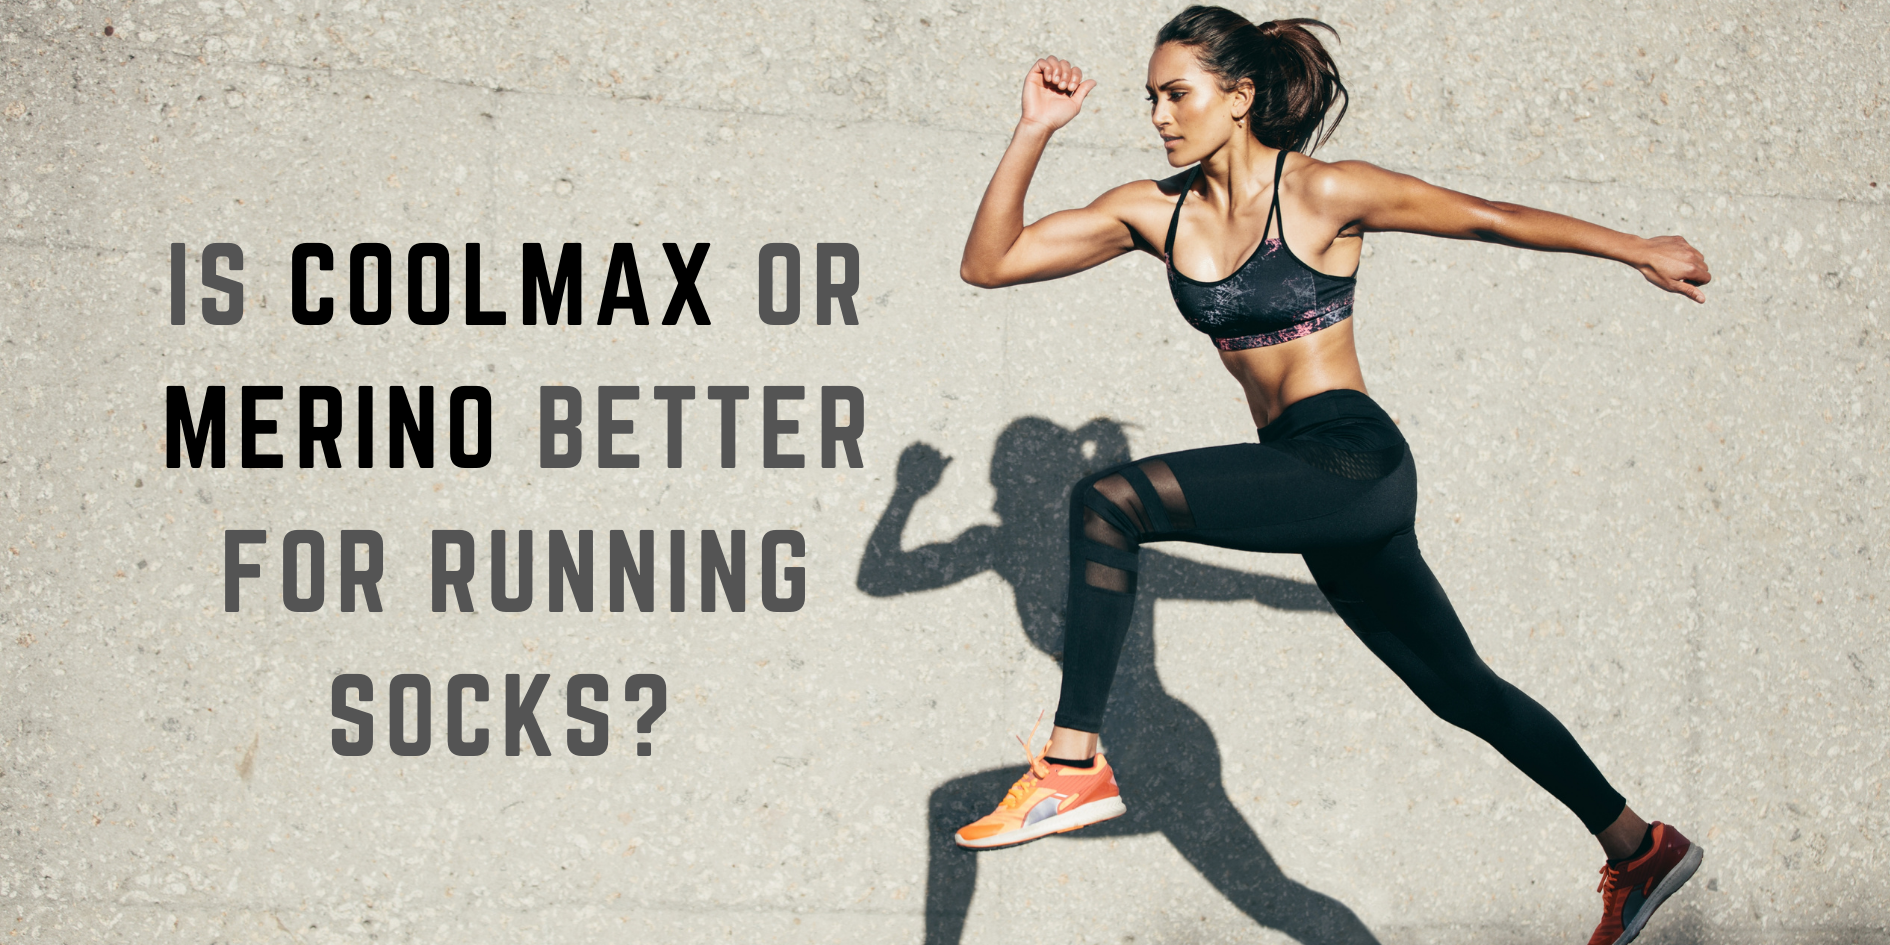 Is Coolmax or Merino Better for Running Socks? We went deep…